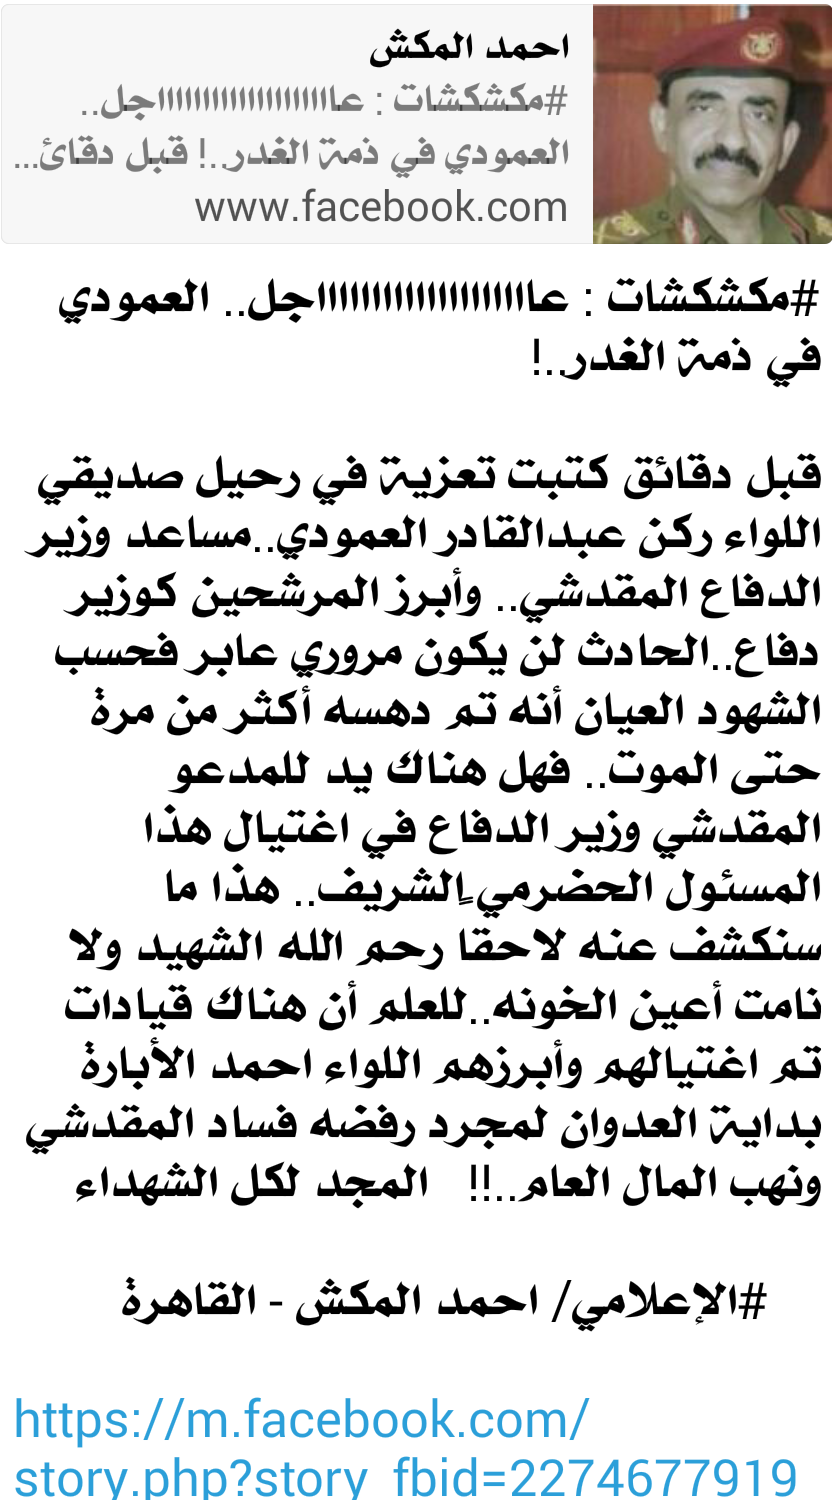 عاجل اتهامات لوزير الدفاع باغتيال اللواء العمودي دهسابسيارة في مدينة الجيزة المصرية